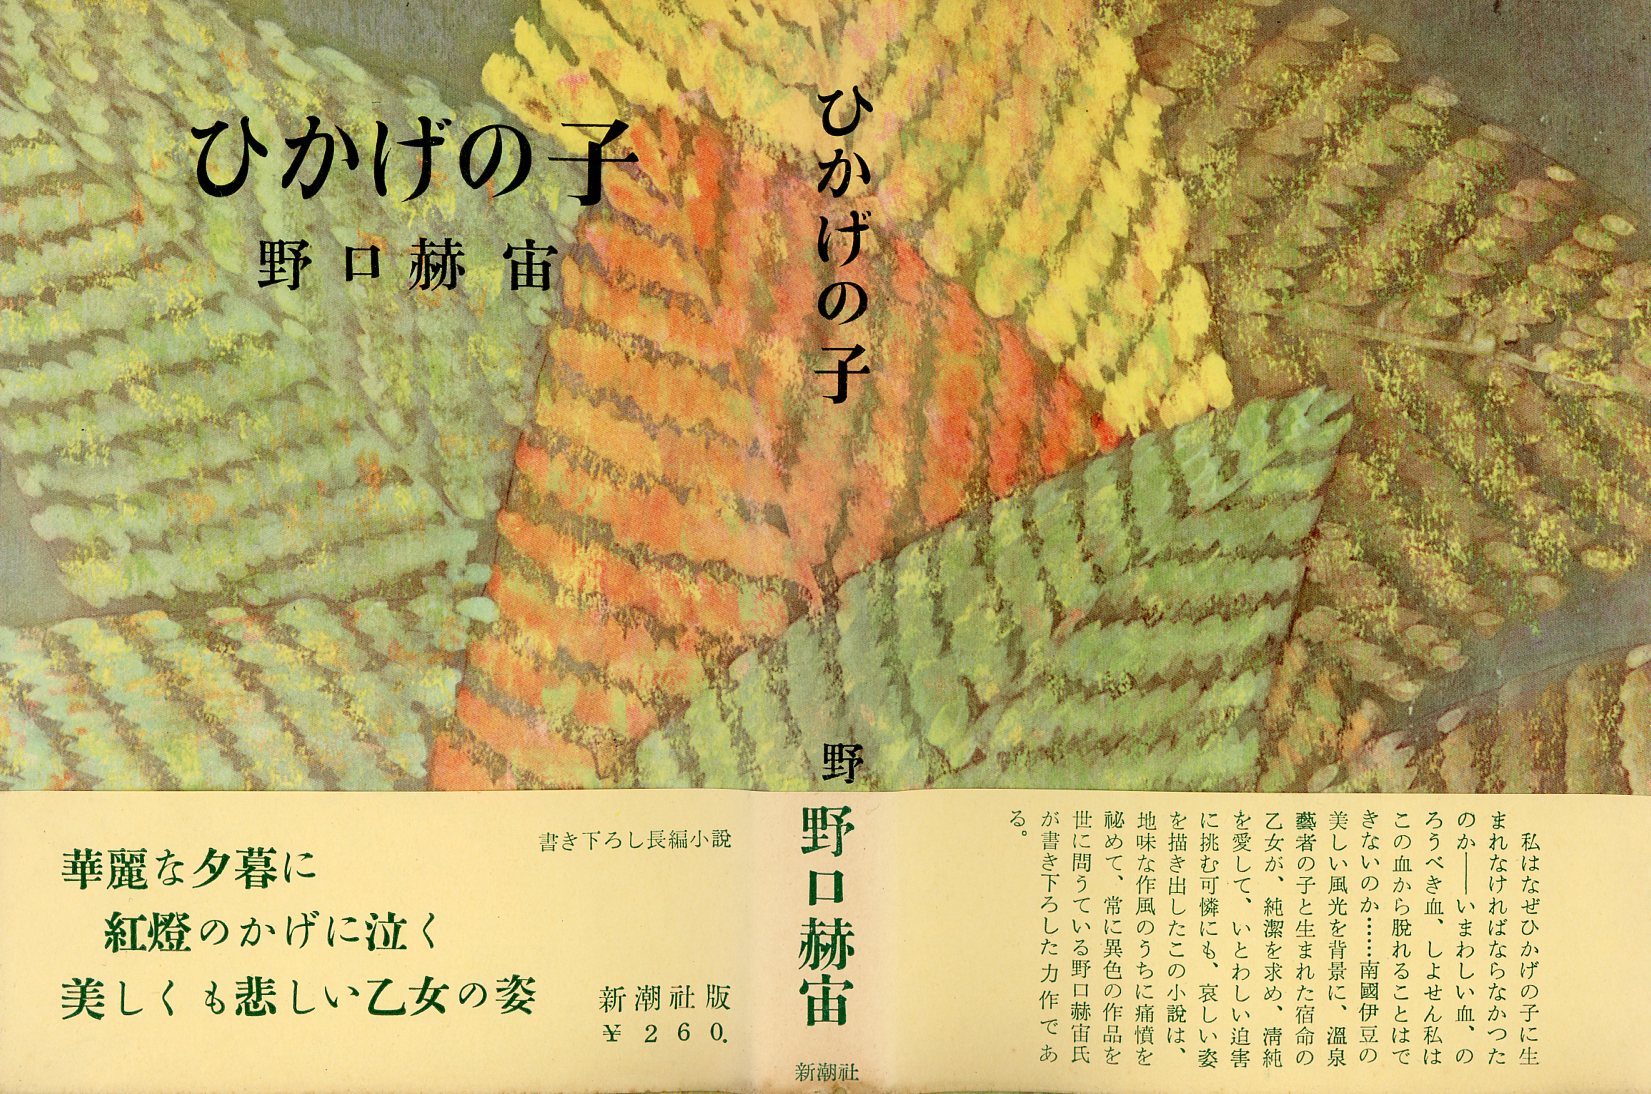 Noguchi 1956 